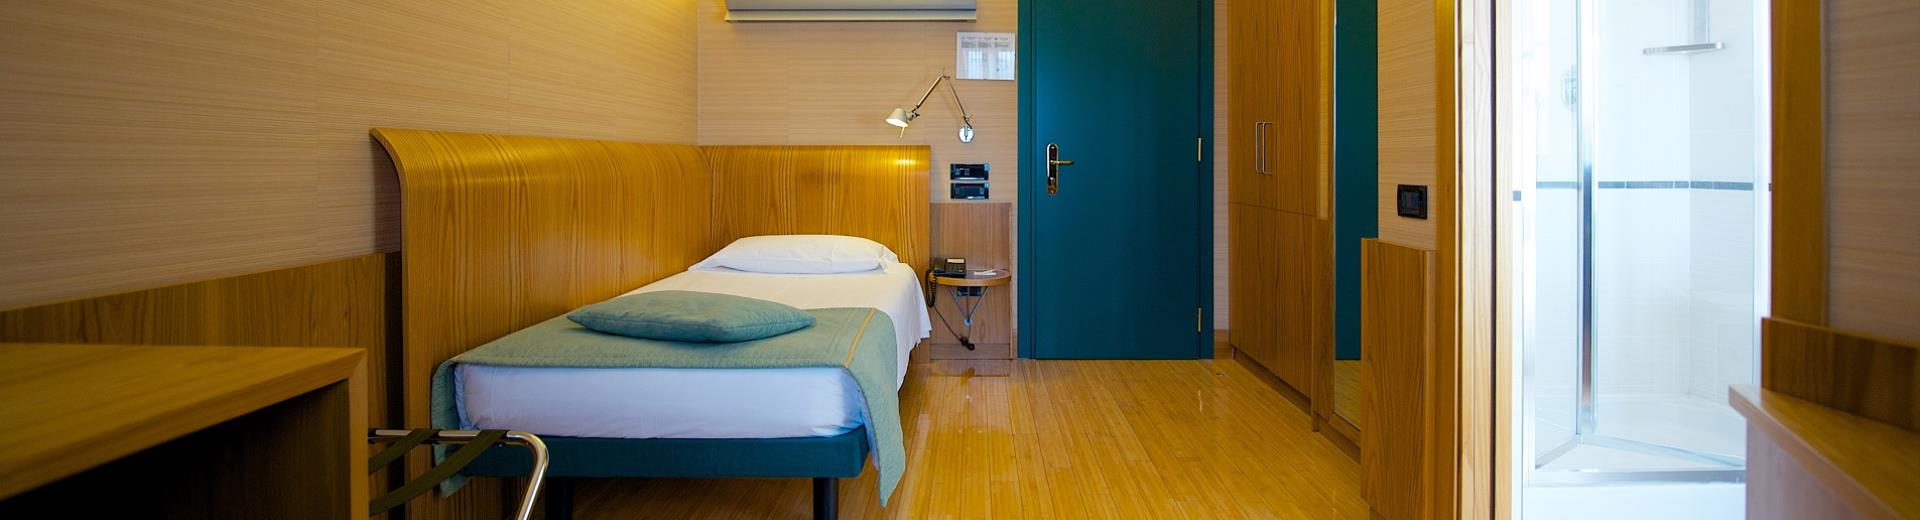 Comfort anche per chi viaggia da solo nelle camere singole del nostro hotel a Torino